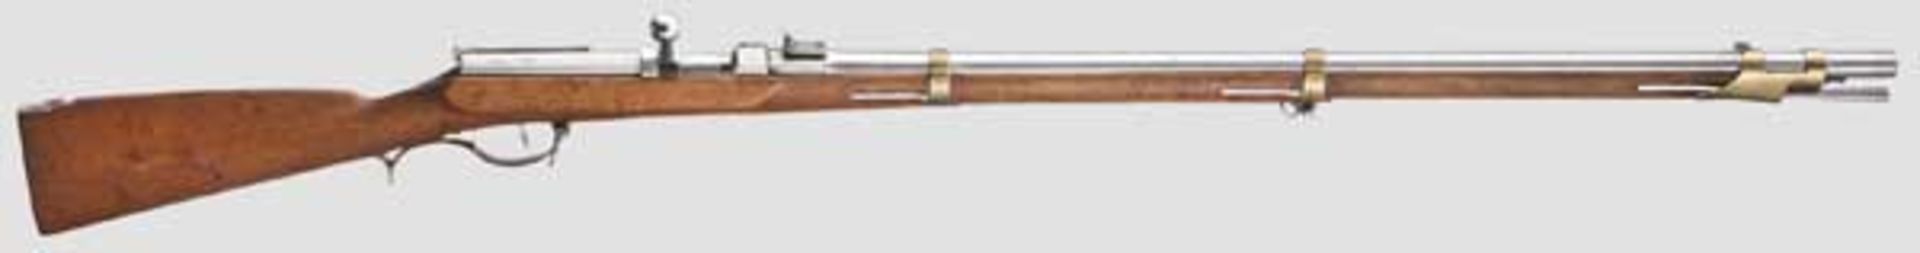 Zündnadelgewehr M 1841, 2. Fertigungsperiode Kaliber 15,4 mm, Nummer 3136 vor der Hülse und auf